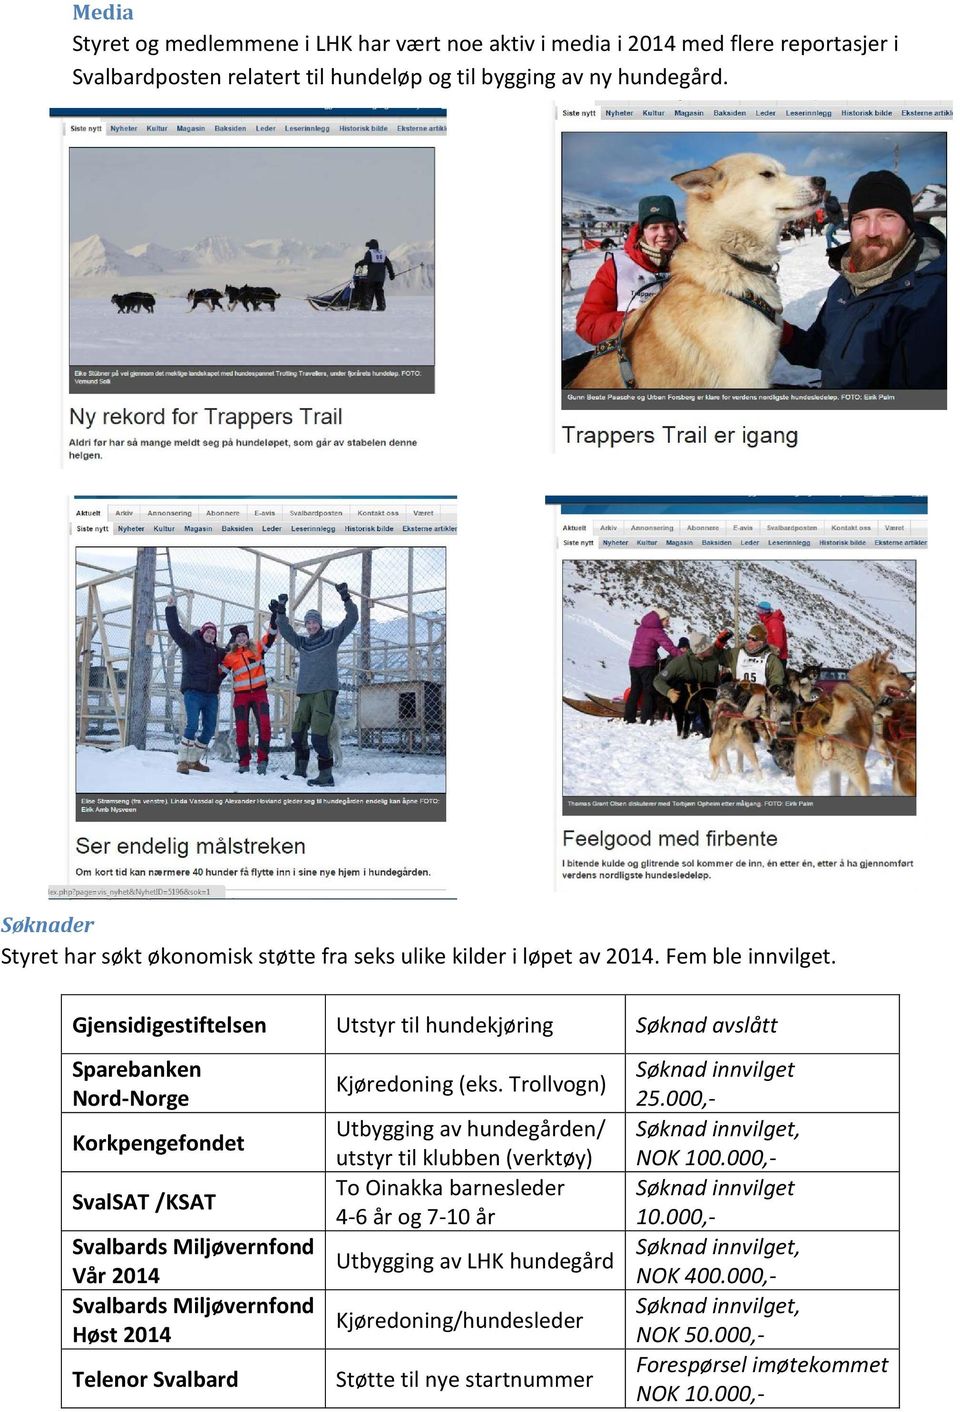 Gjensidigestiftelsen Utstyr til hundekjøring Søknad avslått Sparebanken Nord-Norge Korkpengefondet SvalSAT /KSAT Svalbards Miljøvernfond Vår 2014 Svalbards Miljøvernfond Høst 2014 Telenor Svalbard